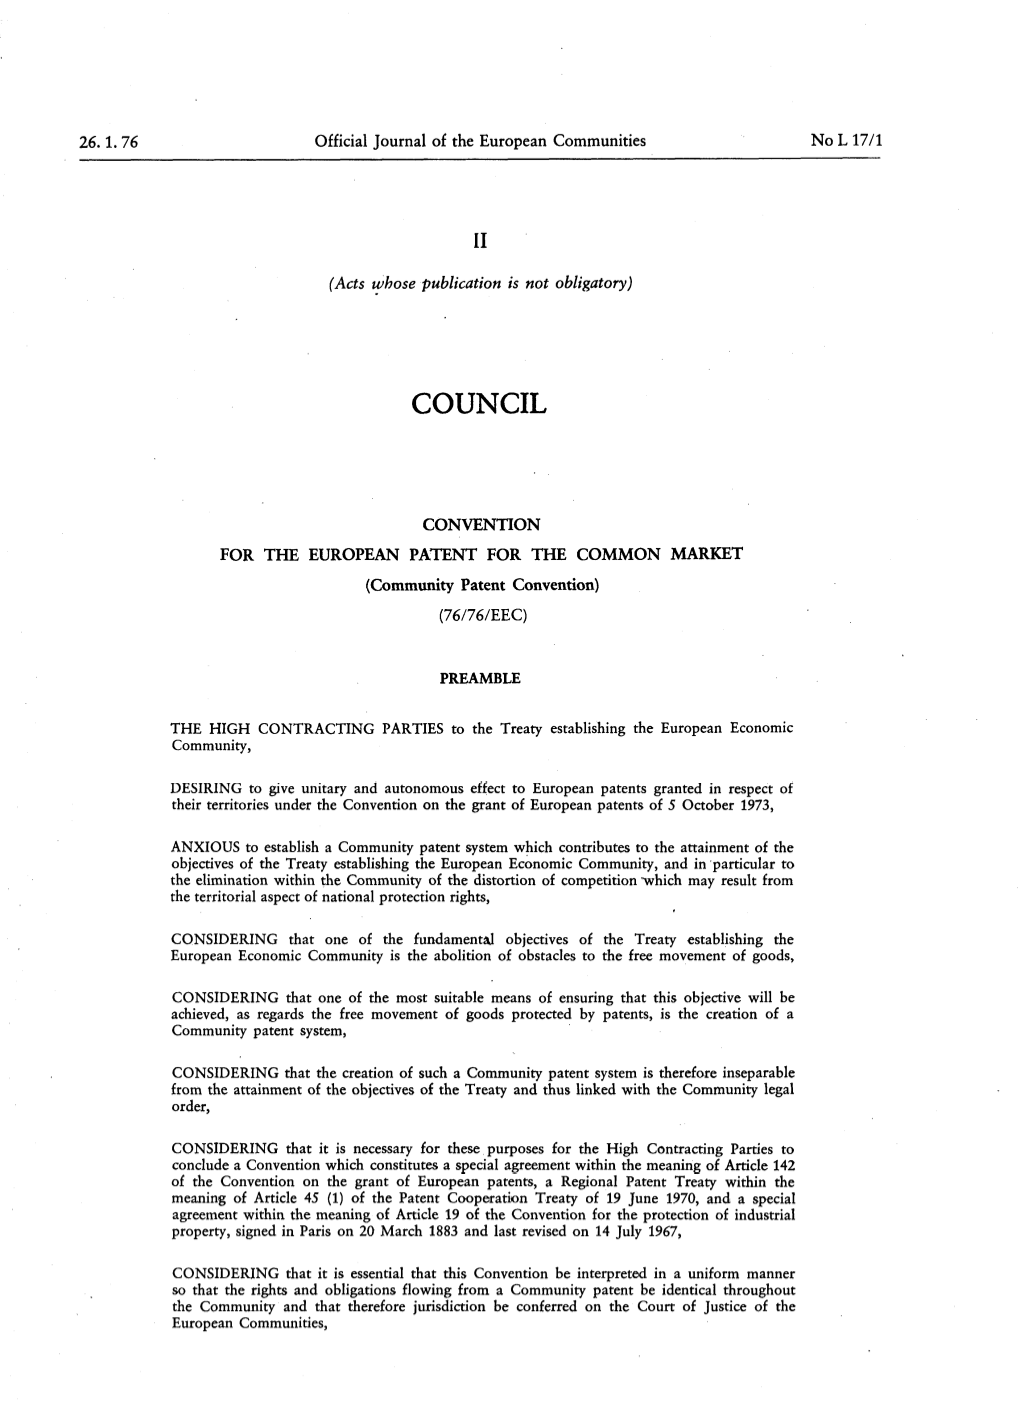 Community Patent Convention) ( 76/76/EEC )